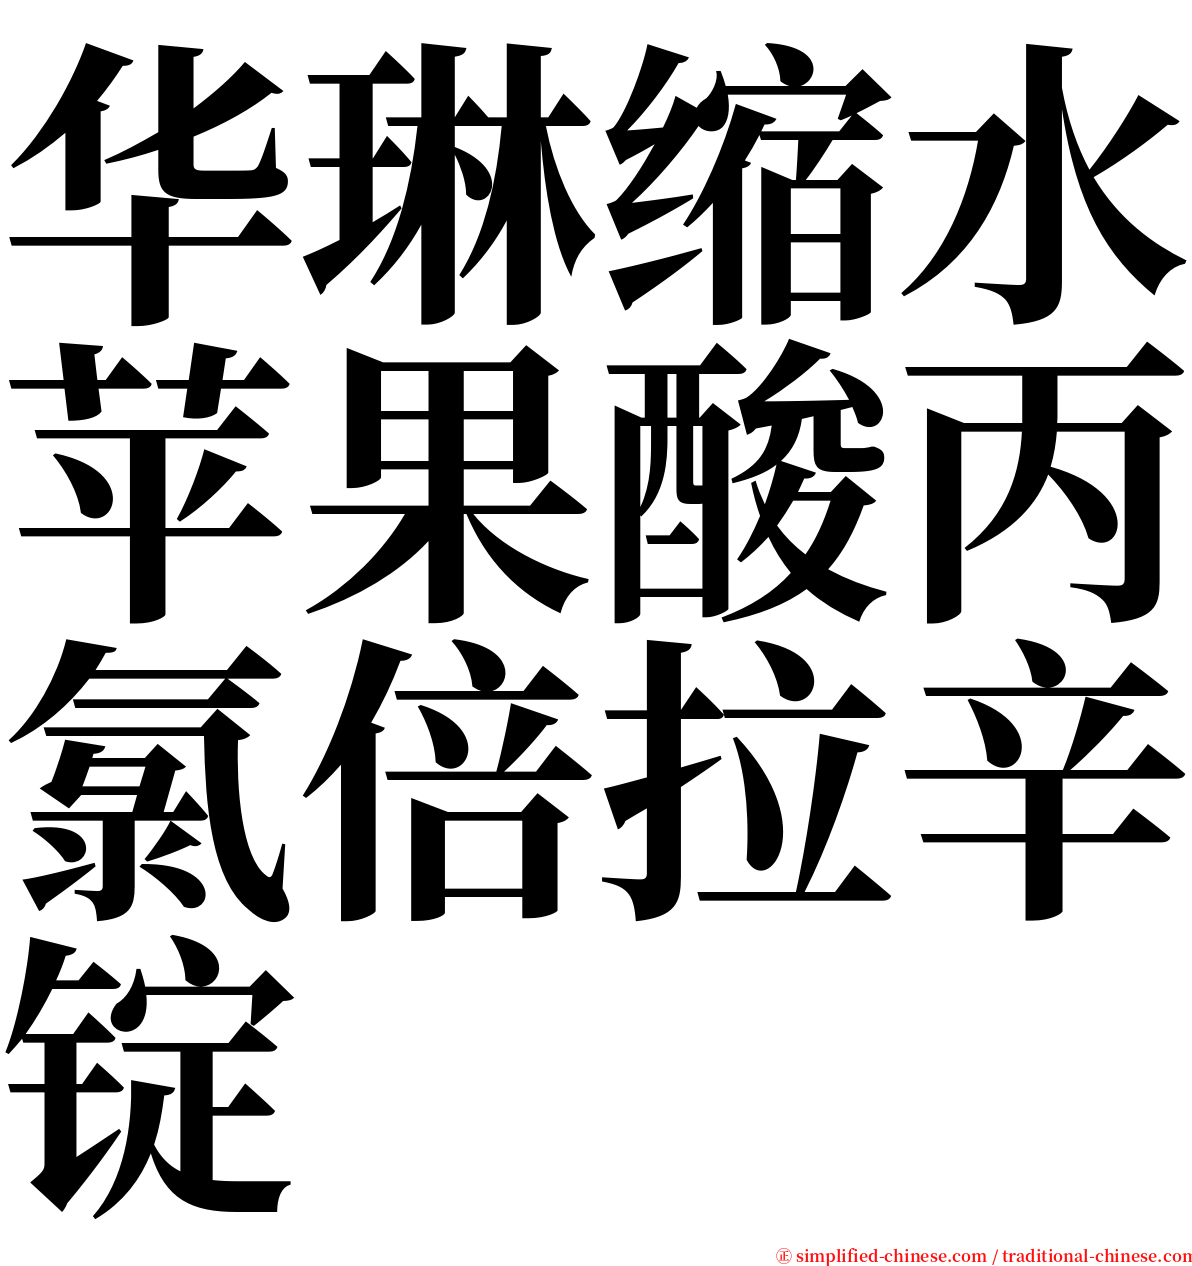 华琳缩水苹果酸丙氯倍拉辛锭 serif font